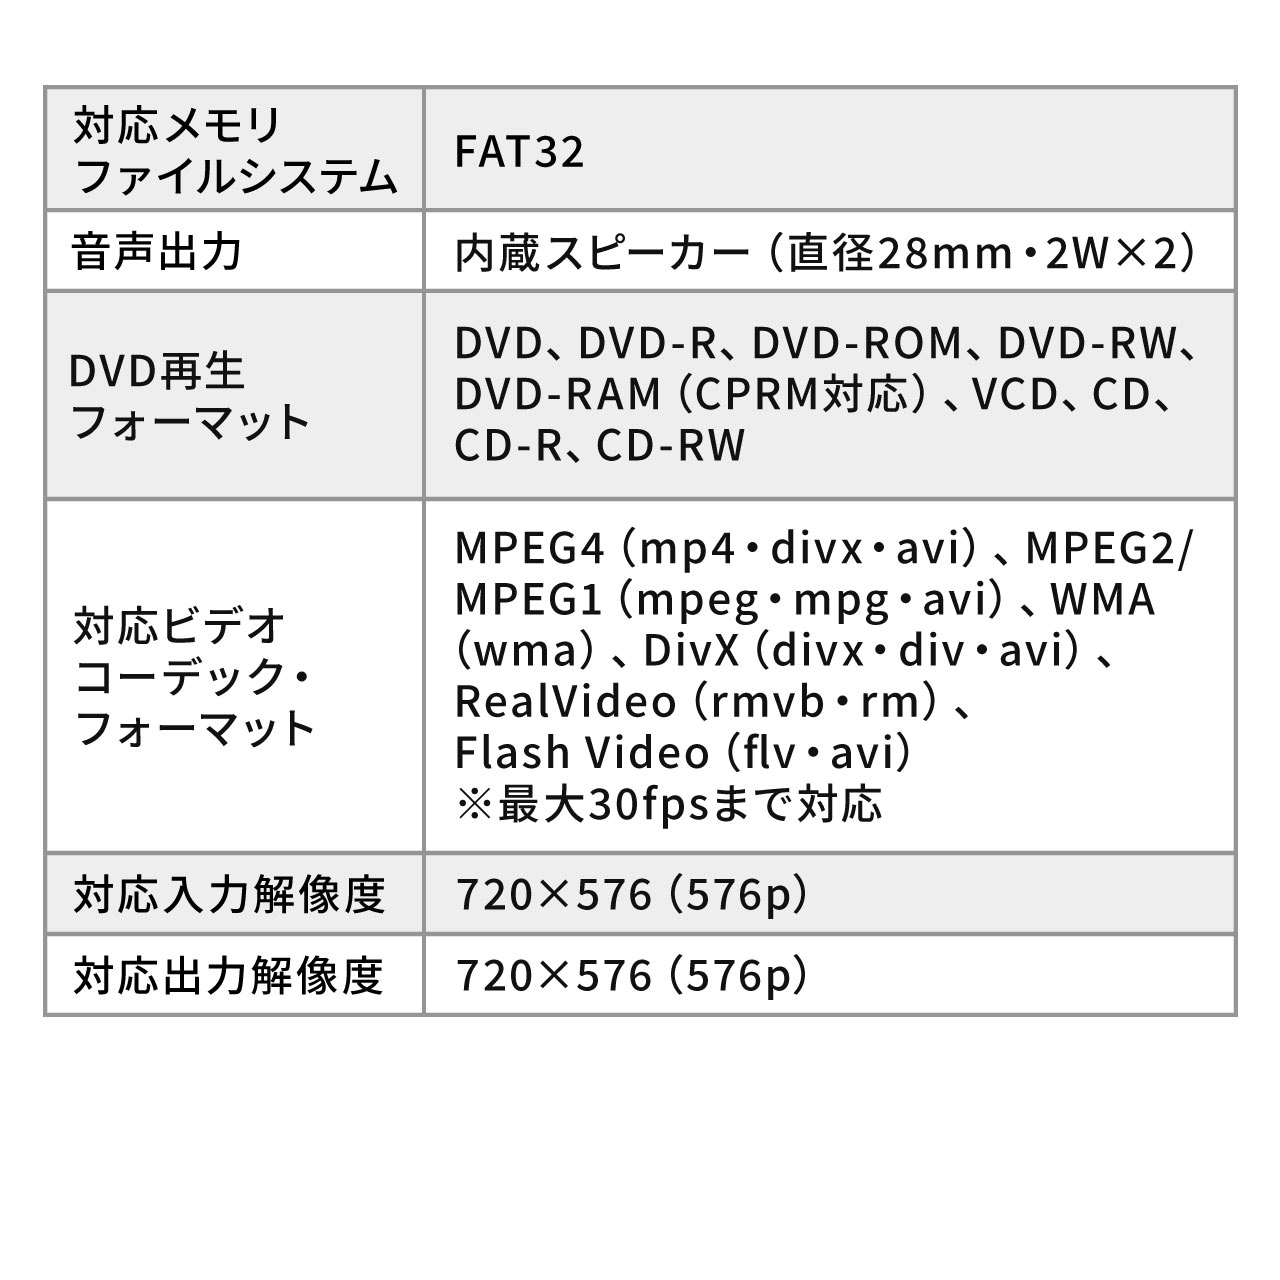 ԍڃwbhXgj^[ DVDv[[ HDMI microSD USB[Đ@\ 200-CAR073